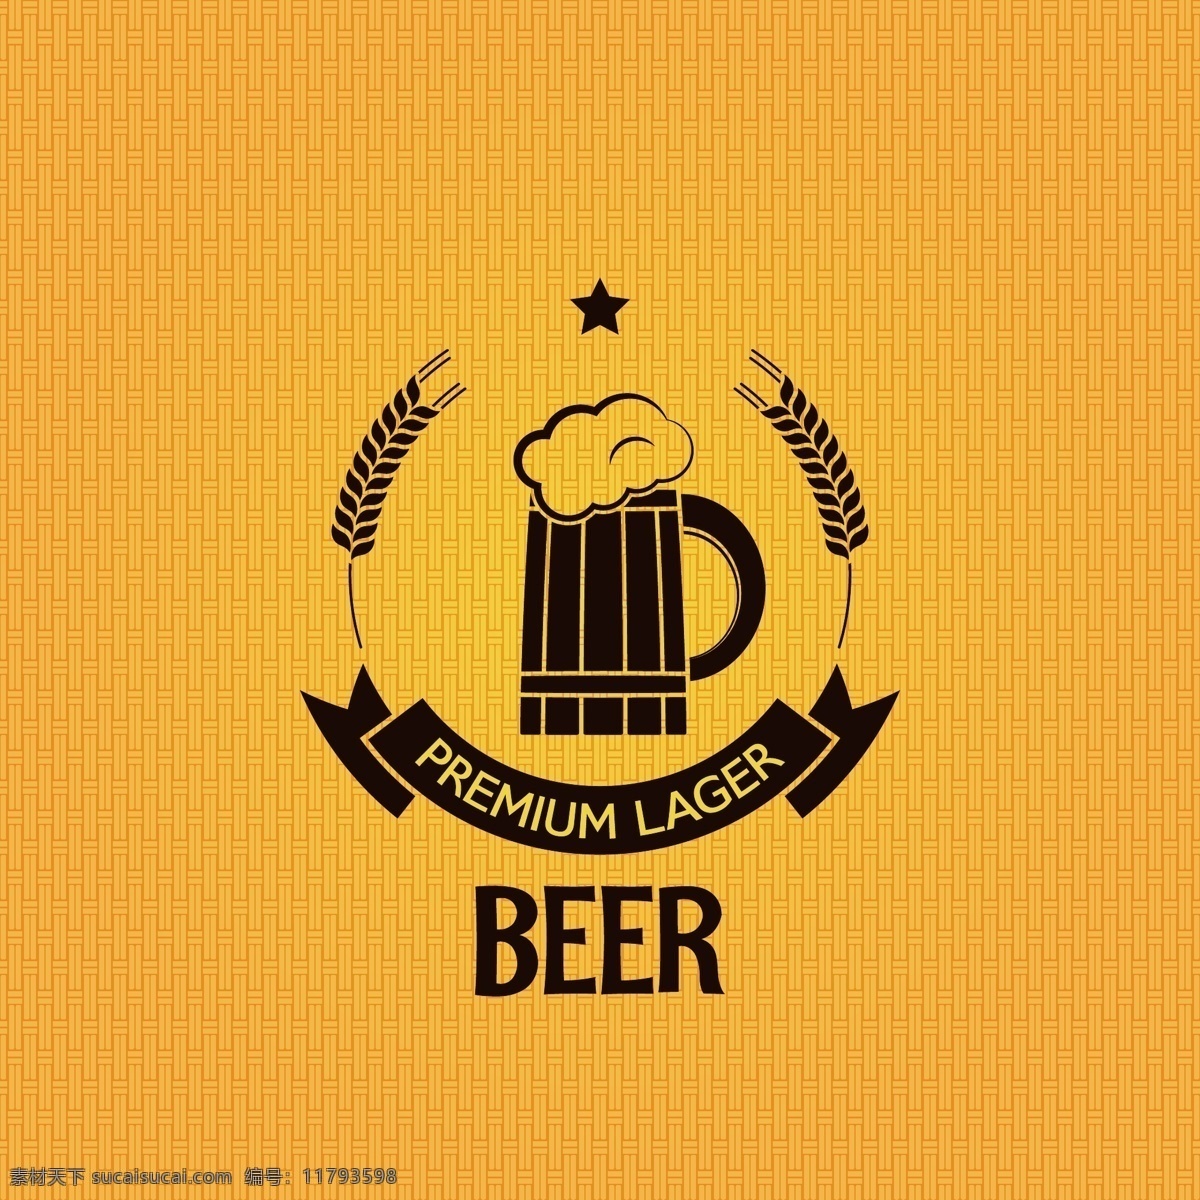 啤酒 商标 图标 啤酒商标 啤酒标签 啤酒标志 啤酒设计 酒水 beer 啤酒包装 小图标 小标志 logo 标志 vi icon 标识 图标设计 logo设计 标志设计 标识设计 矢量设计 餐饮美食 生活百科 矢量